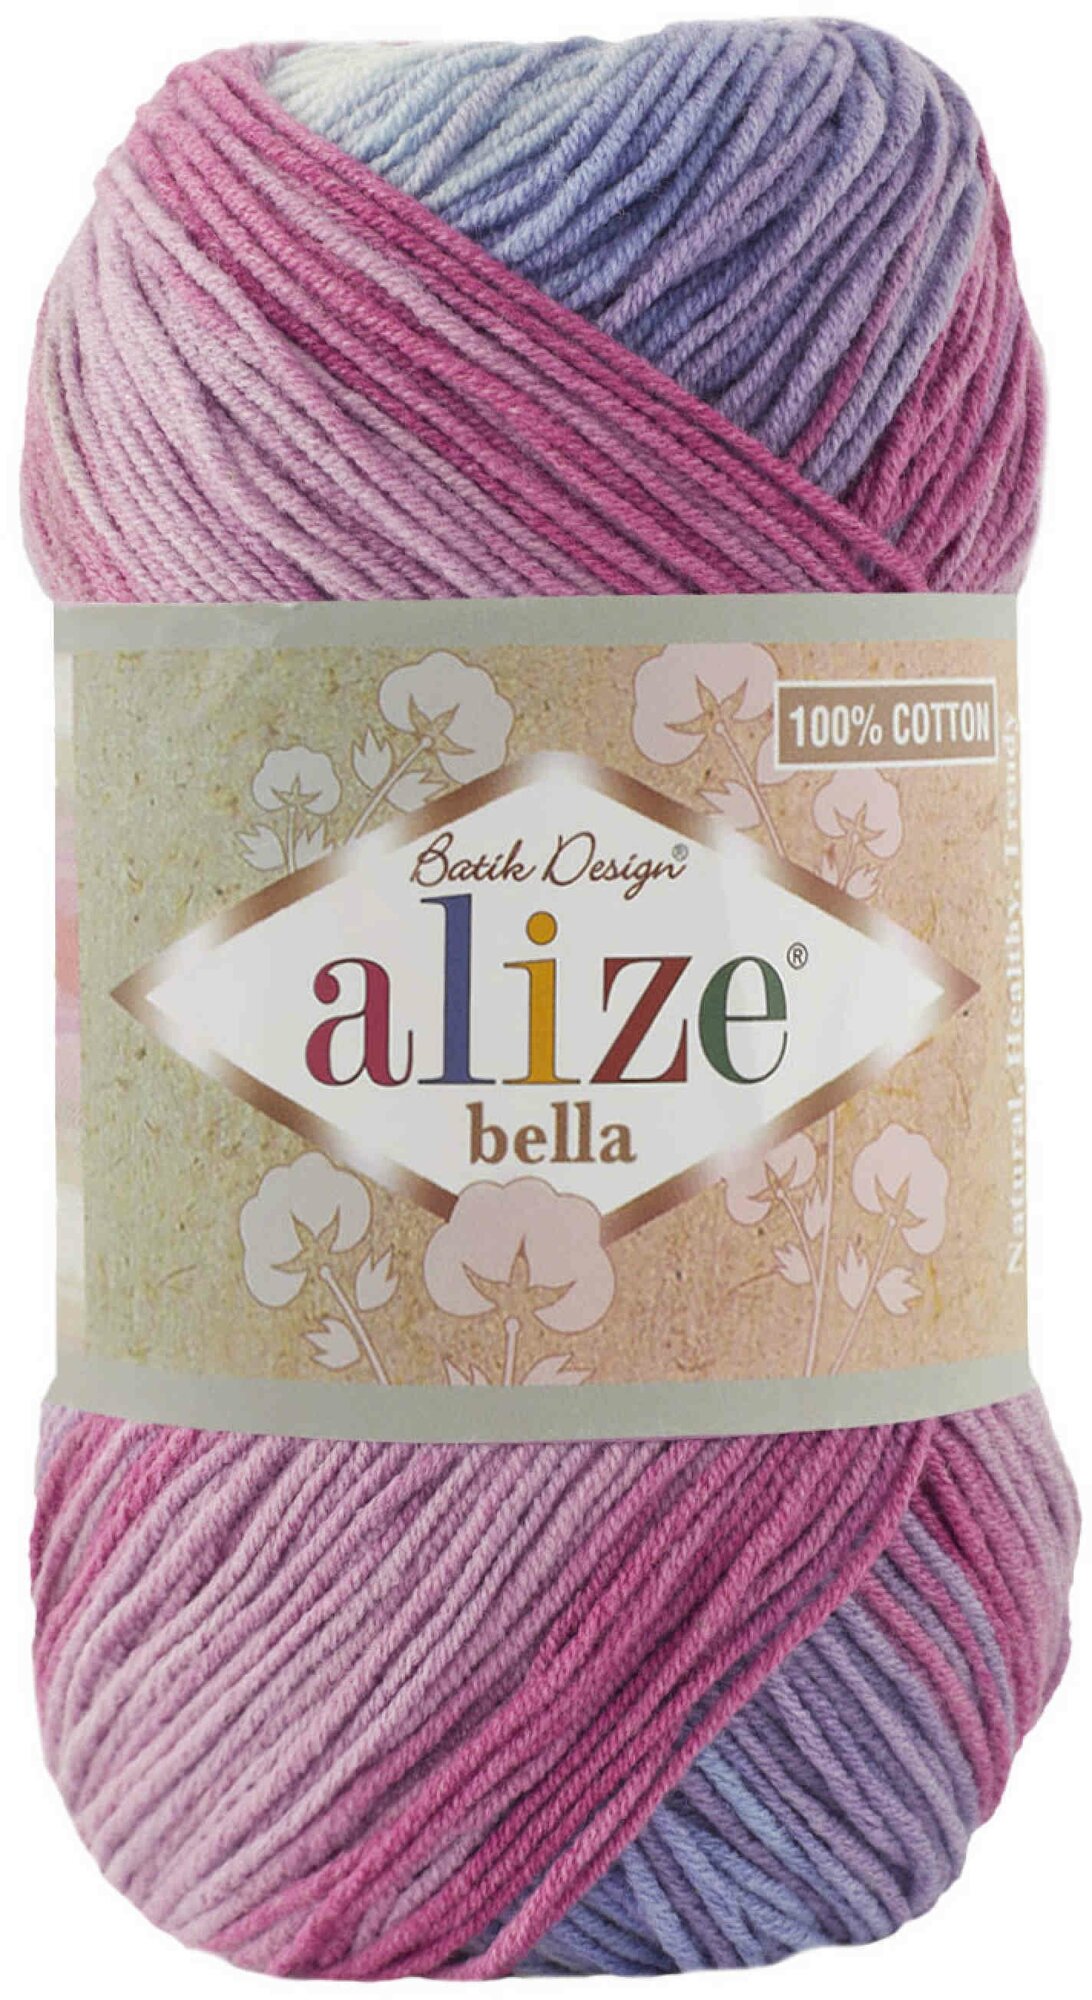 Пряжа Alize Bella Batik 100 голубой-лиловый-розовый-фиолетовый (3686), 100%хлопок, 360м, 100г, 1шт